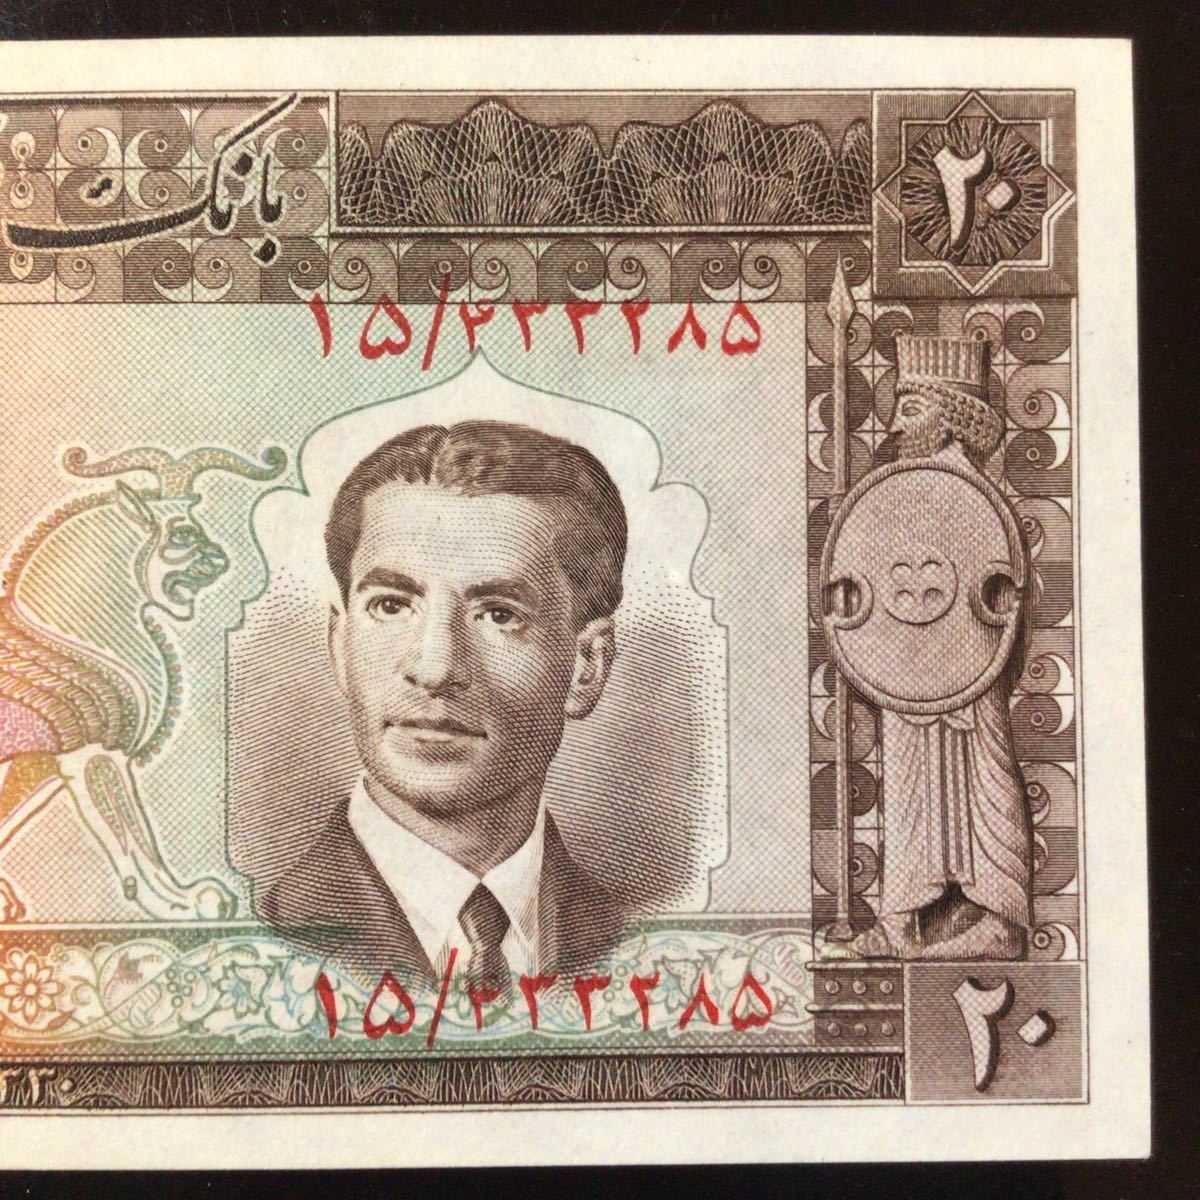 World Banknote Grading IRAN《Bank Melli》20 Rials【1951】『PMG